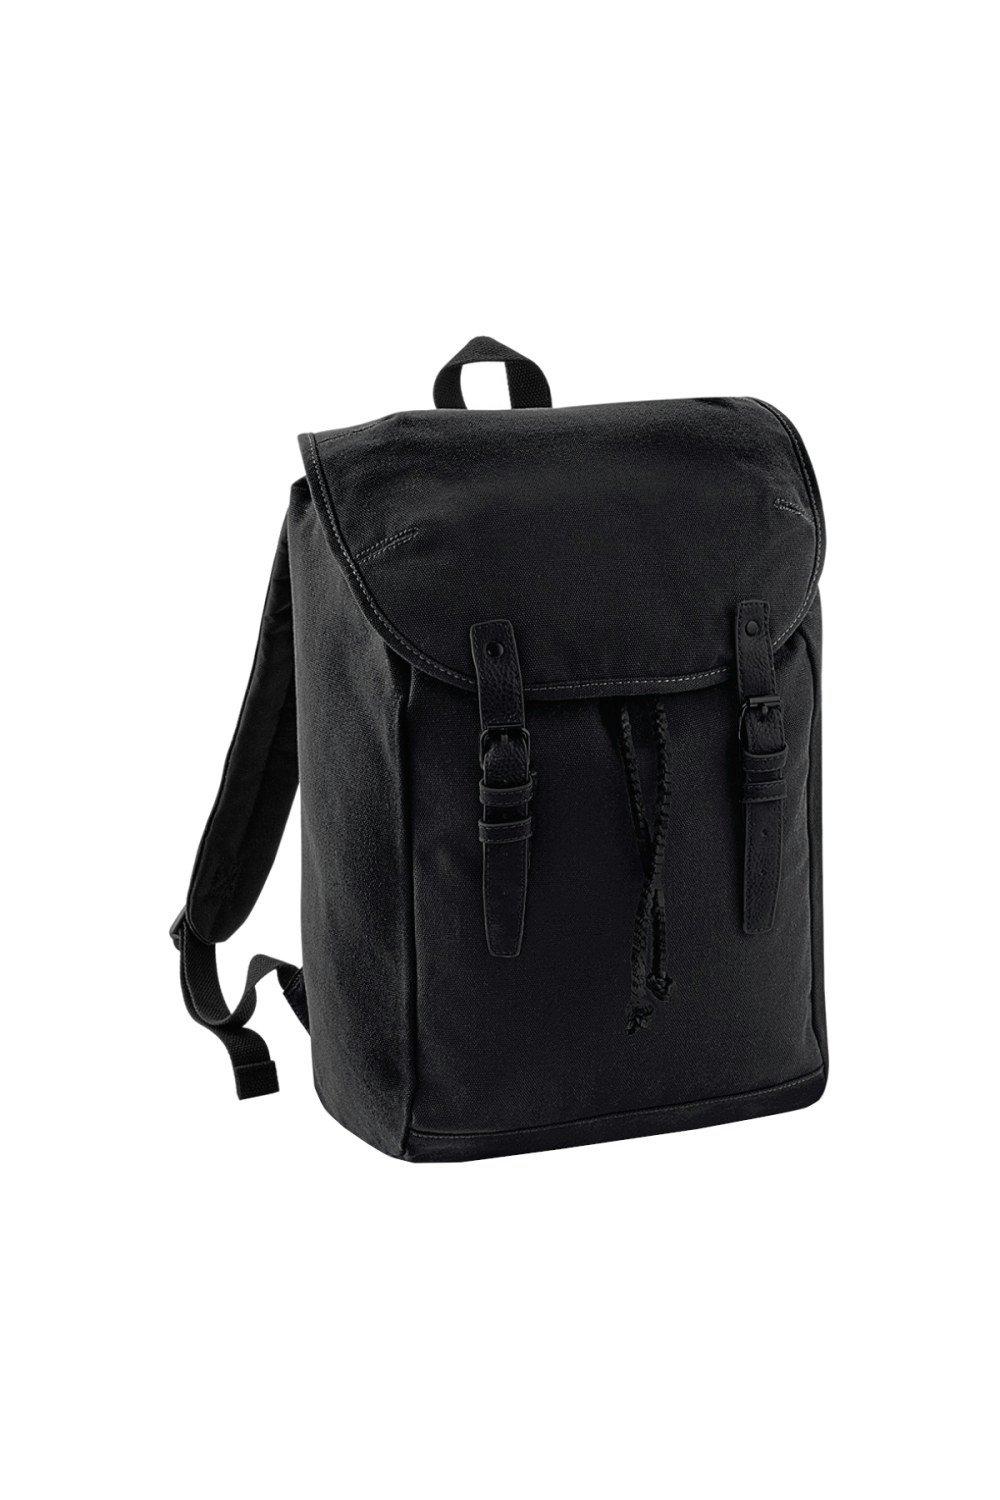 Винтажный рюкзак-рюкзак Quadra, черный